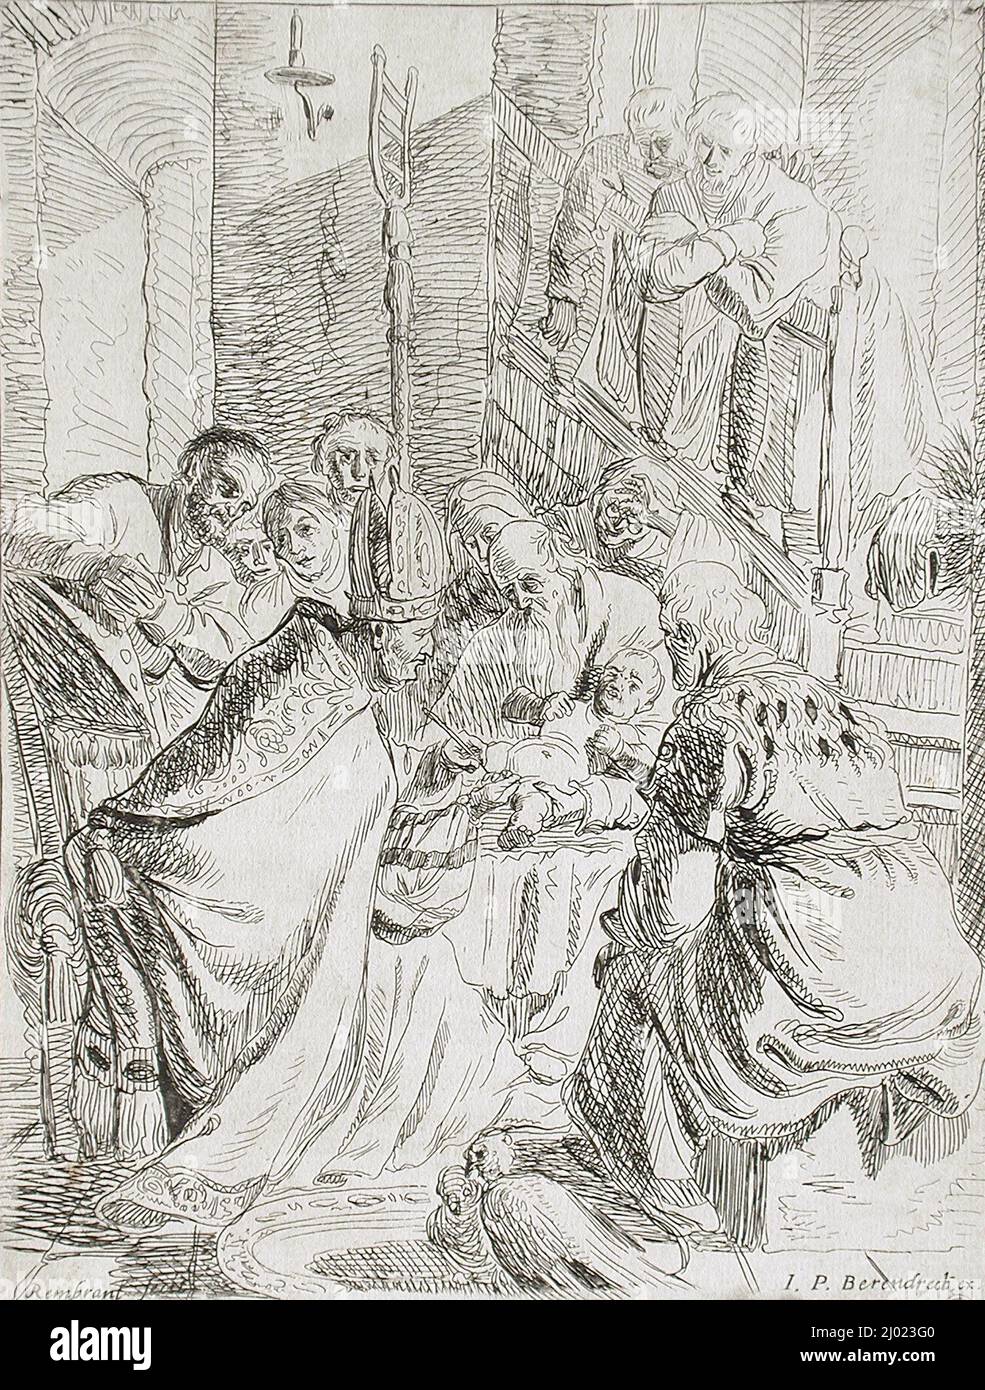 Die Beschneidung. Rembrandt Harmensz. Van Rijn (Niederlande, Leiden, 1606-1669). Holland, c. 1625 (später gedruckt). Drucke; Radierungen. Ätzen Stockfoto